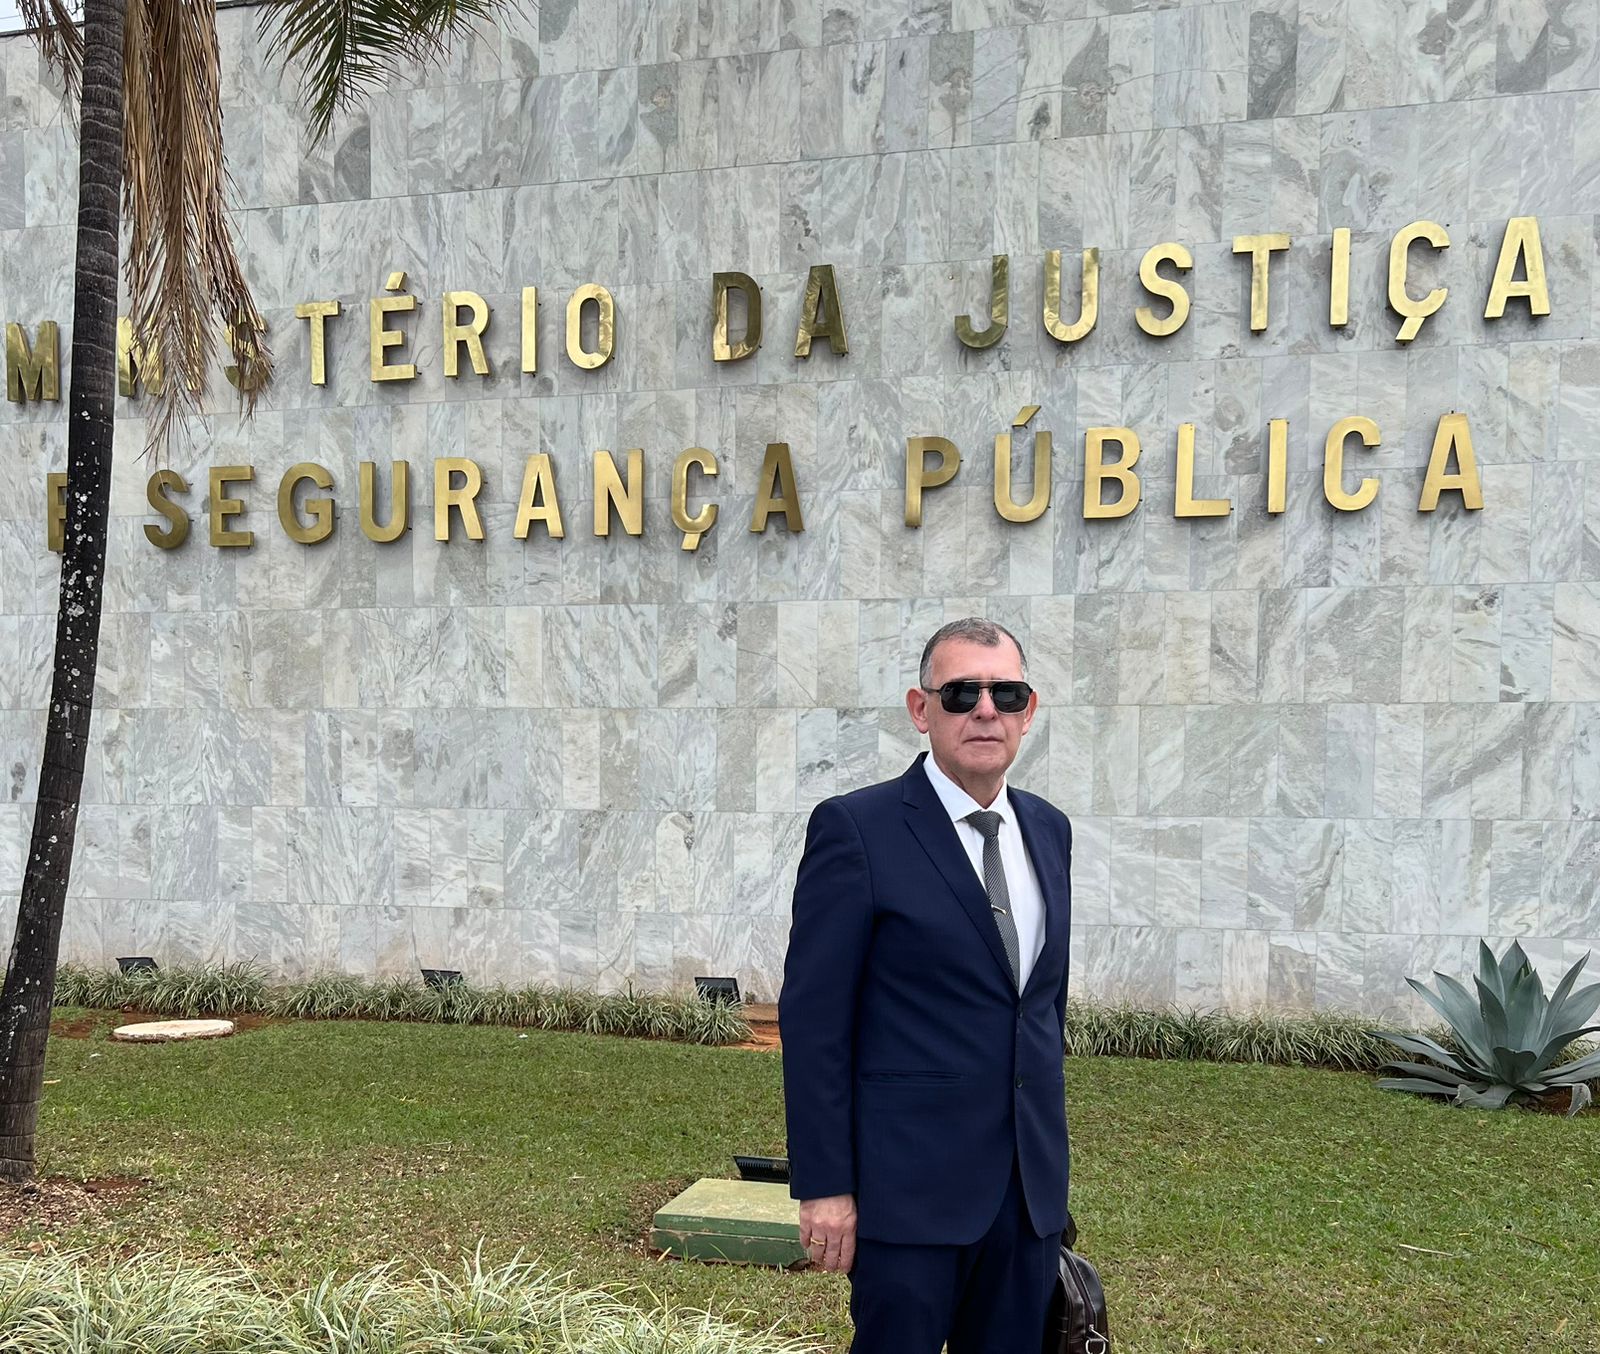 Secretário de Desenvolvimento Econômico participa de evento promovido pelo Ministério da Justiça e Segurança Pública em Brasília 8